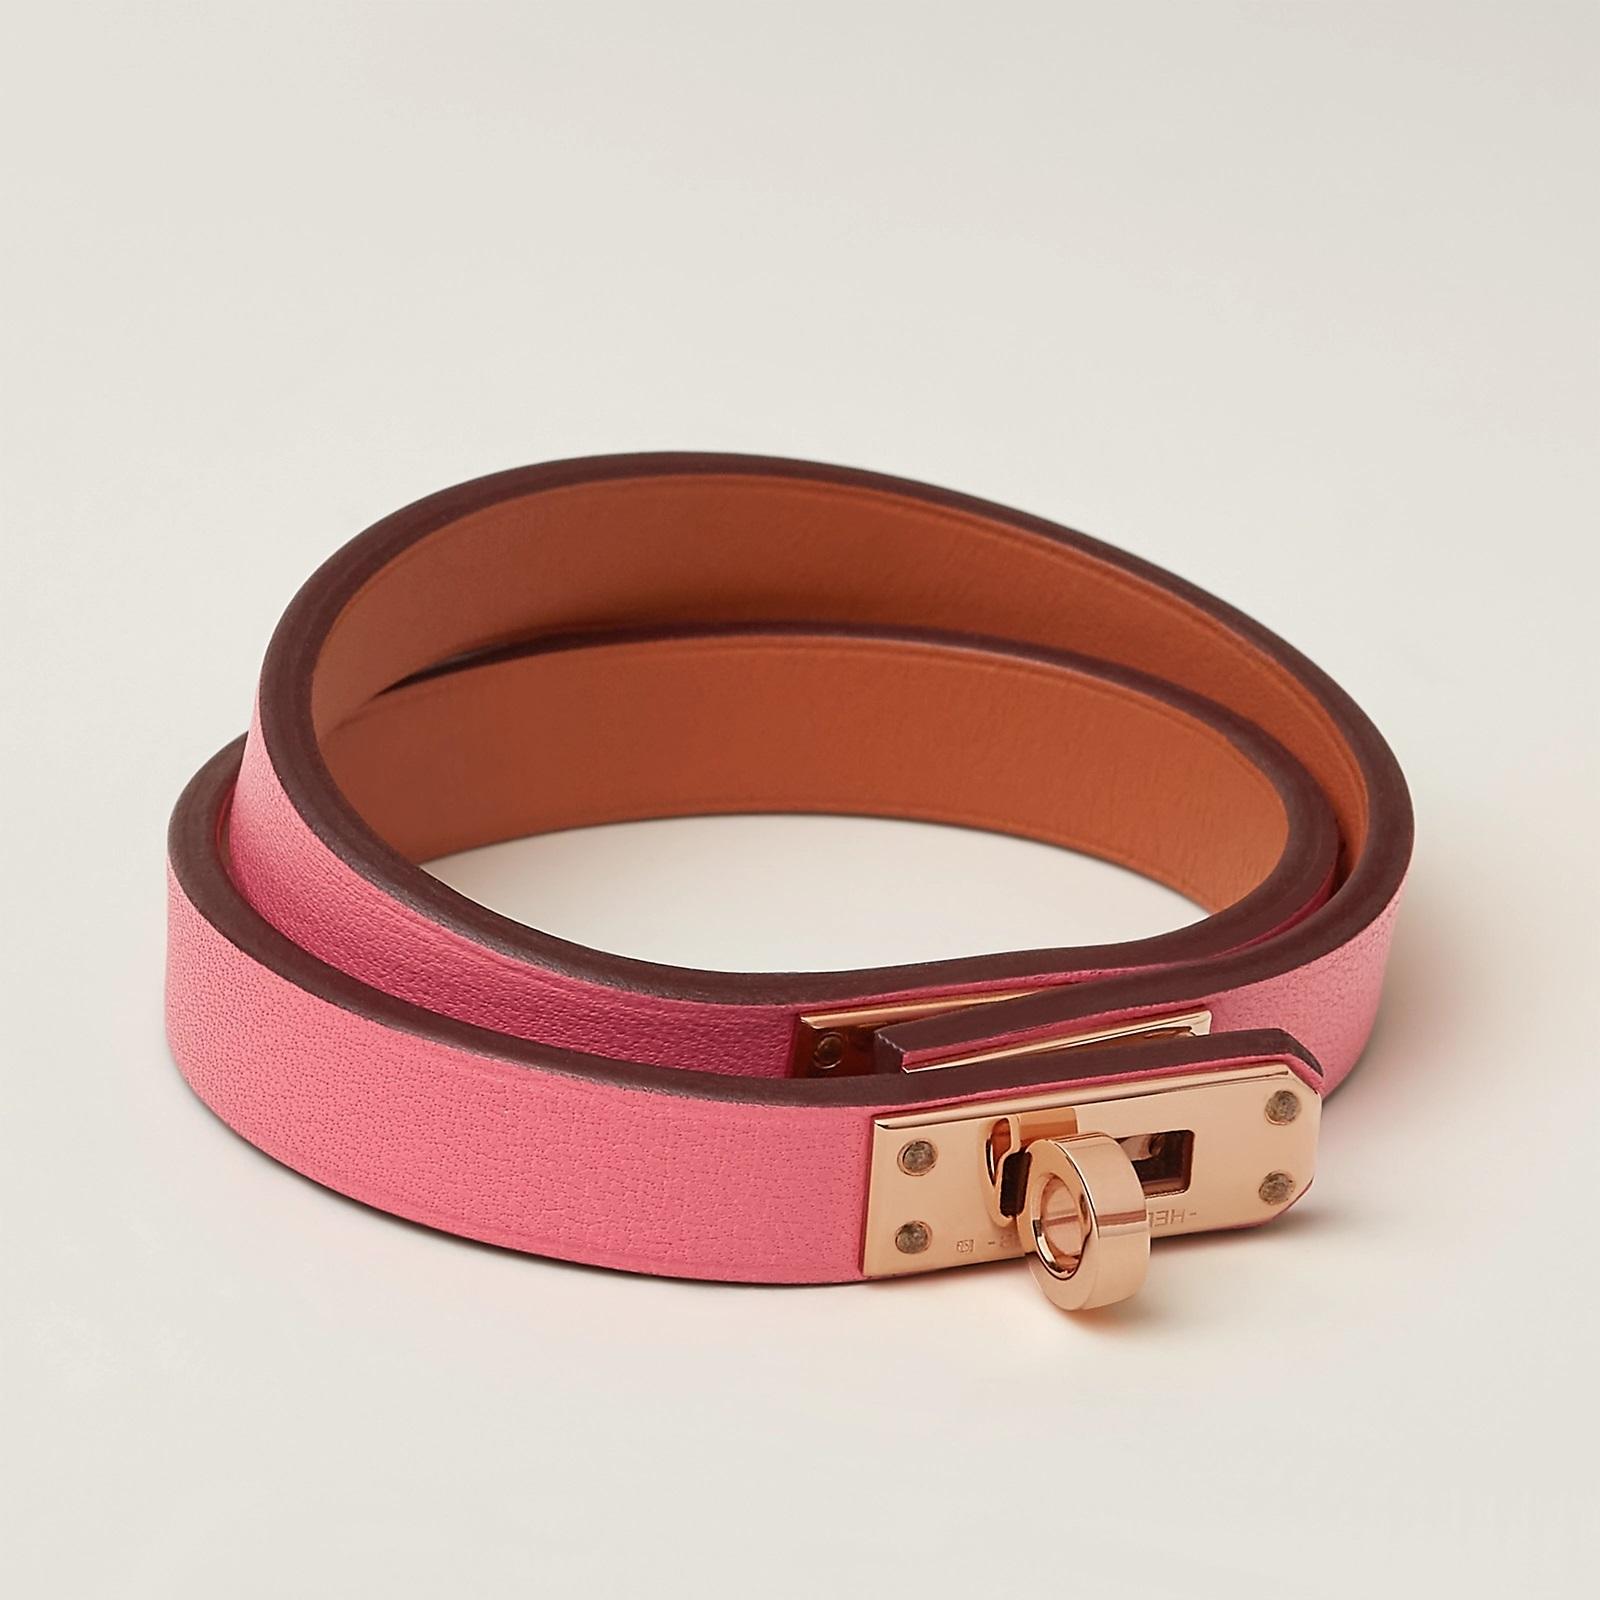 Couleur Rose Azalée Taille T3 16.5cm
Bracelet double tour en cuir de veau Swift avec fermeture mini Kelly en plaqué or rose.
Taille du poignet de 15,5 à 16,5 cm  Largeur du cuir : 1 cm